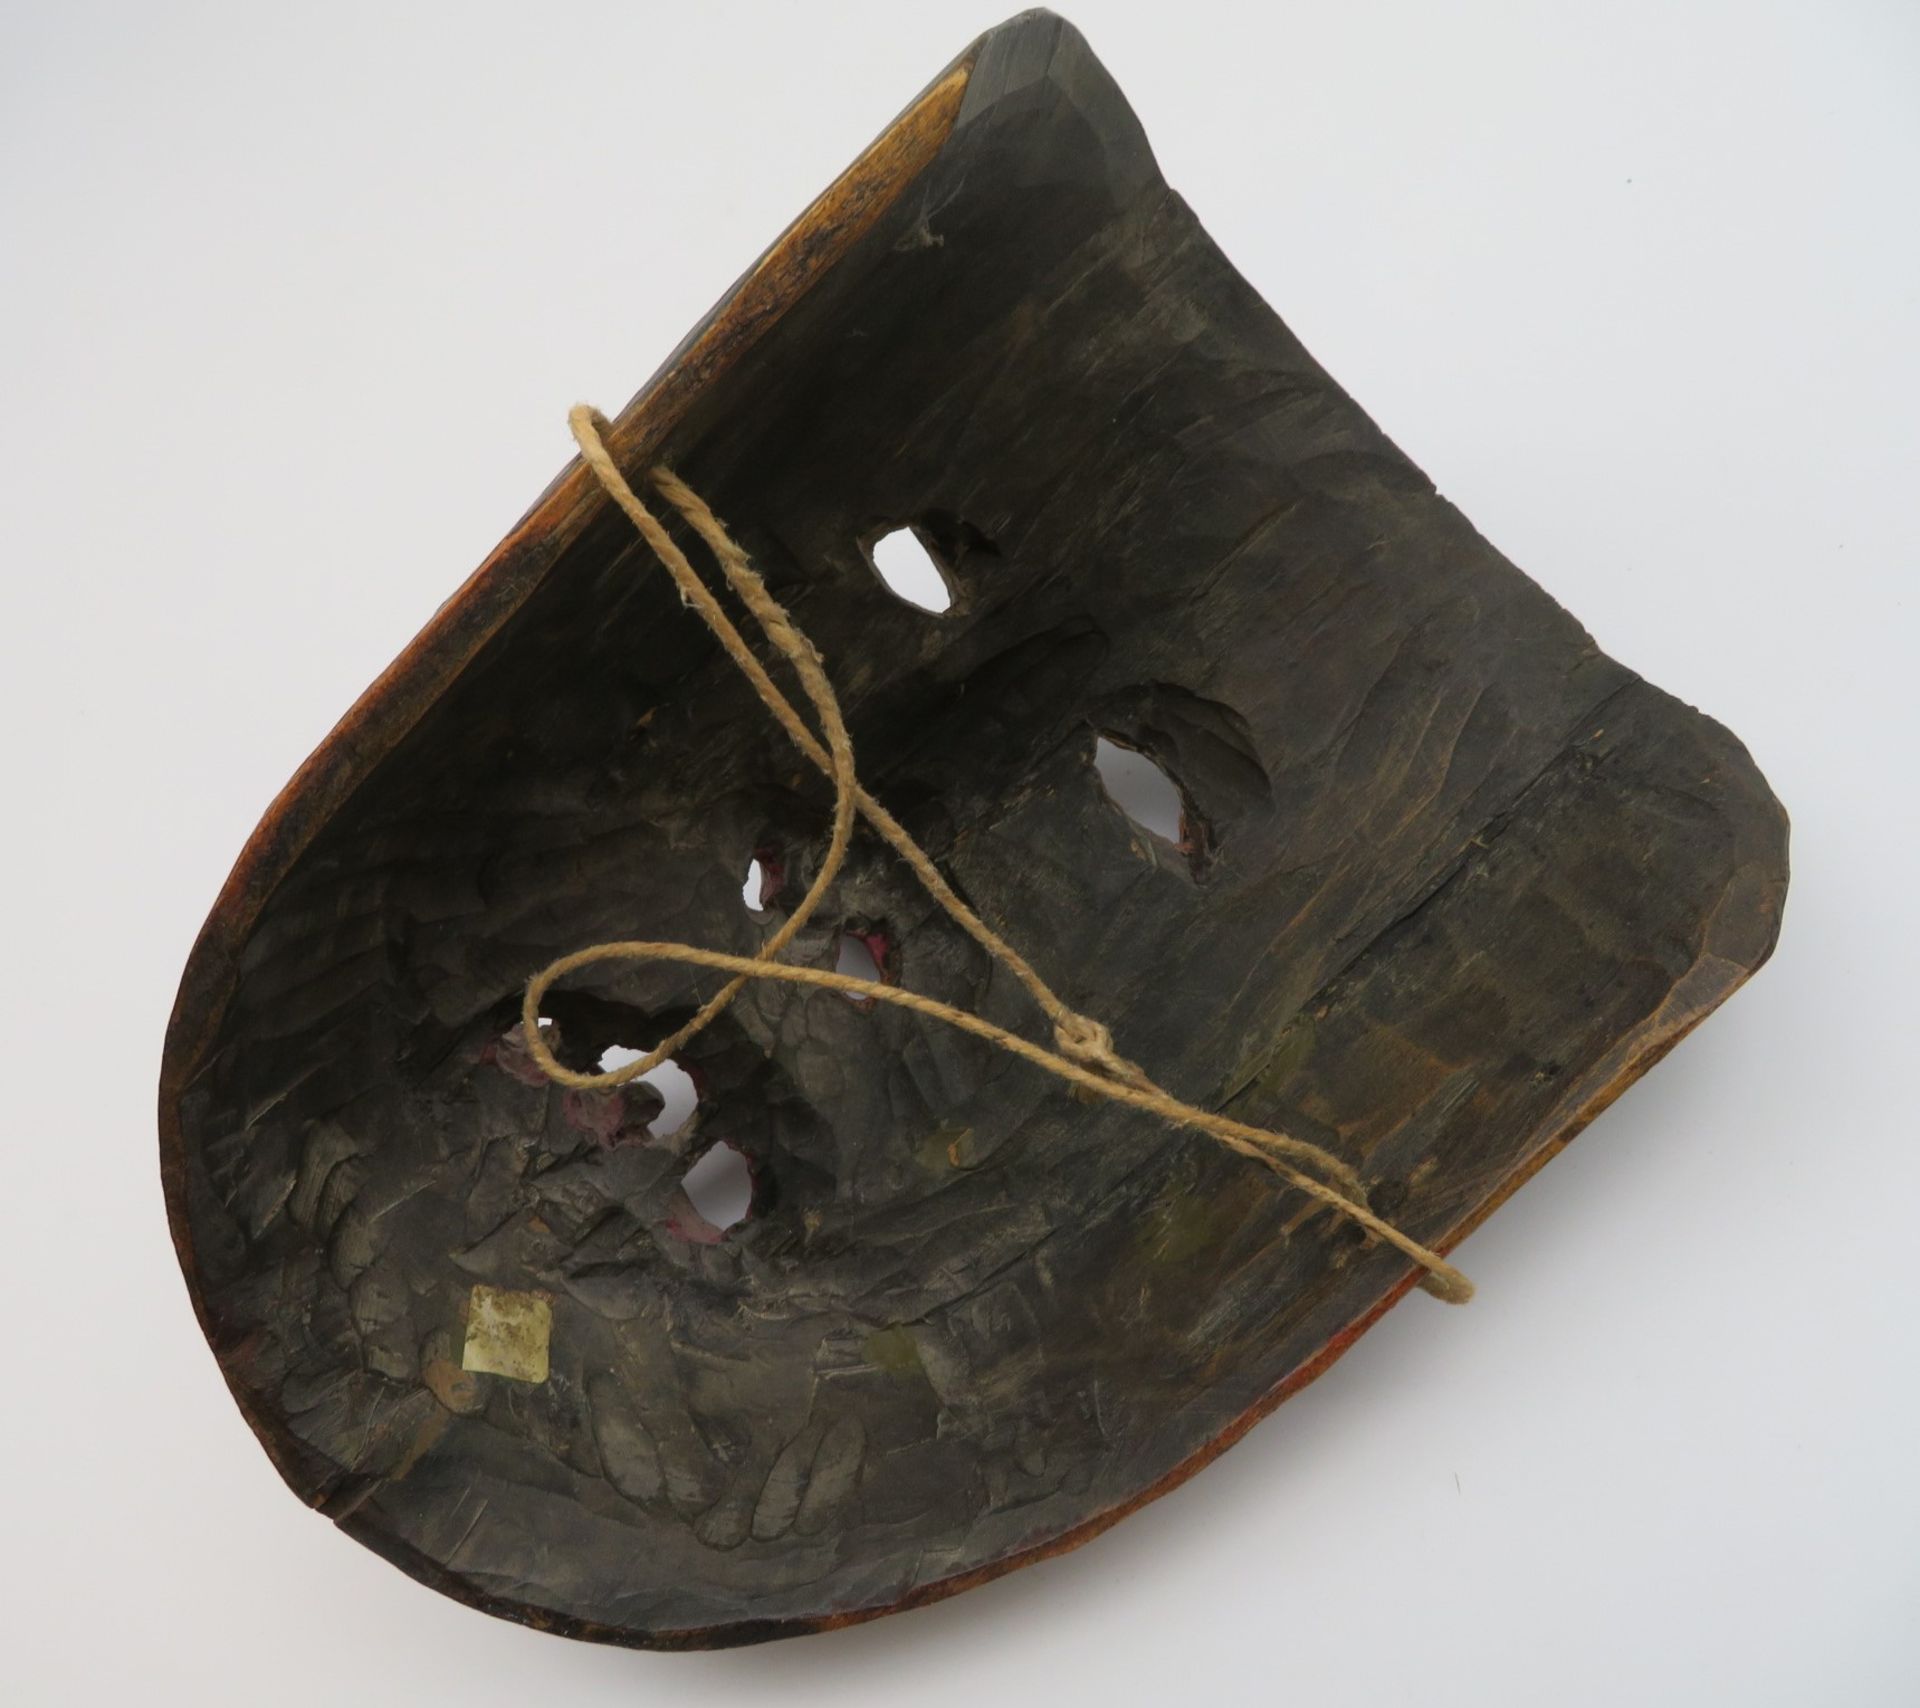 Antike Perchtenmaske, Holz geschnitzt und gefasst, 22 x 16 x 12 cm. - Image 2 of 2